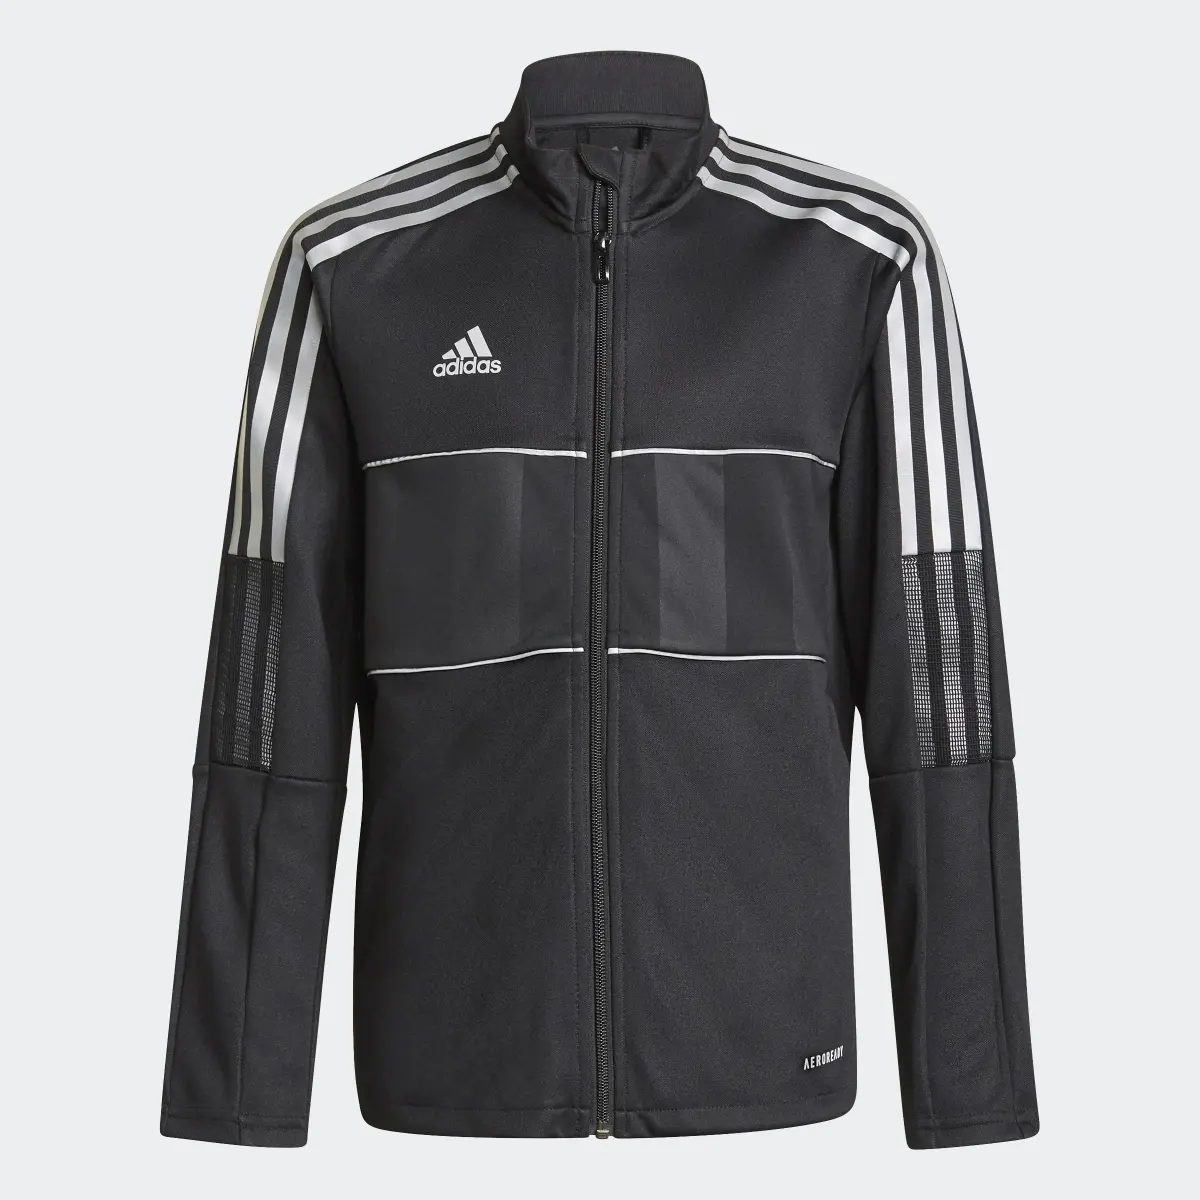 Adidas Tiro Reflective Jacket. 1